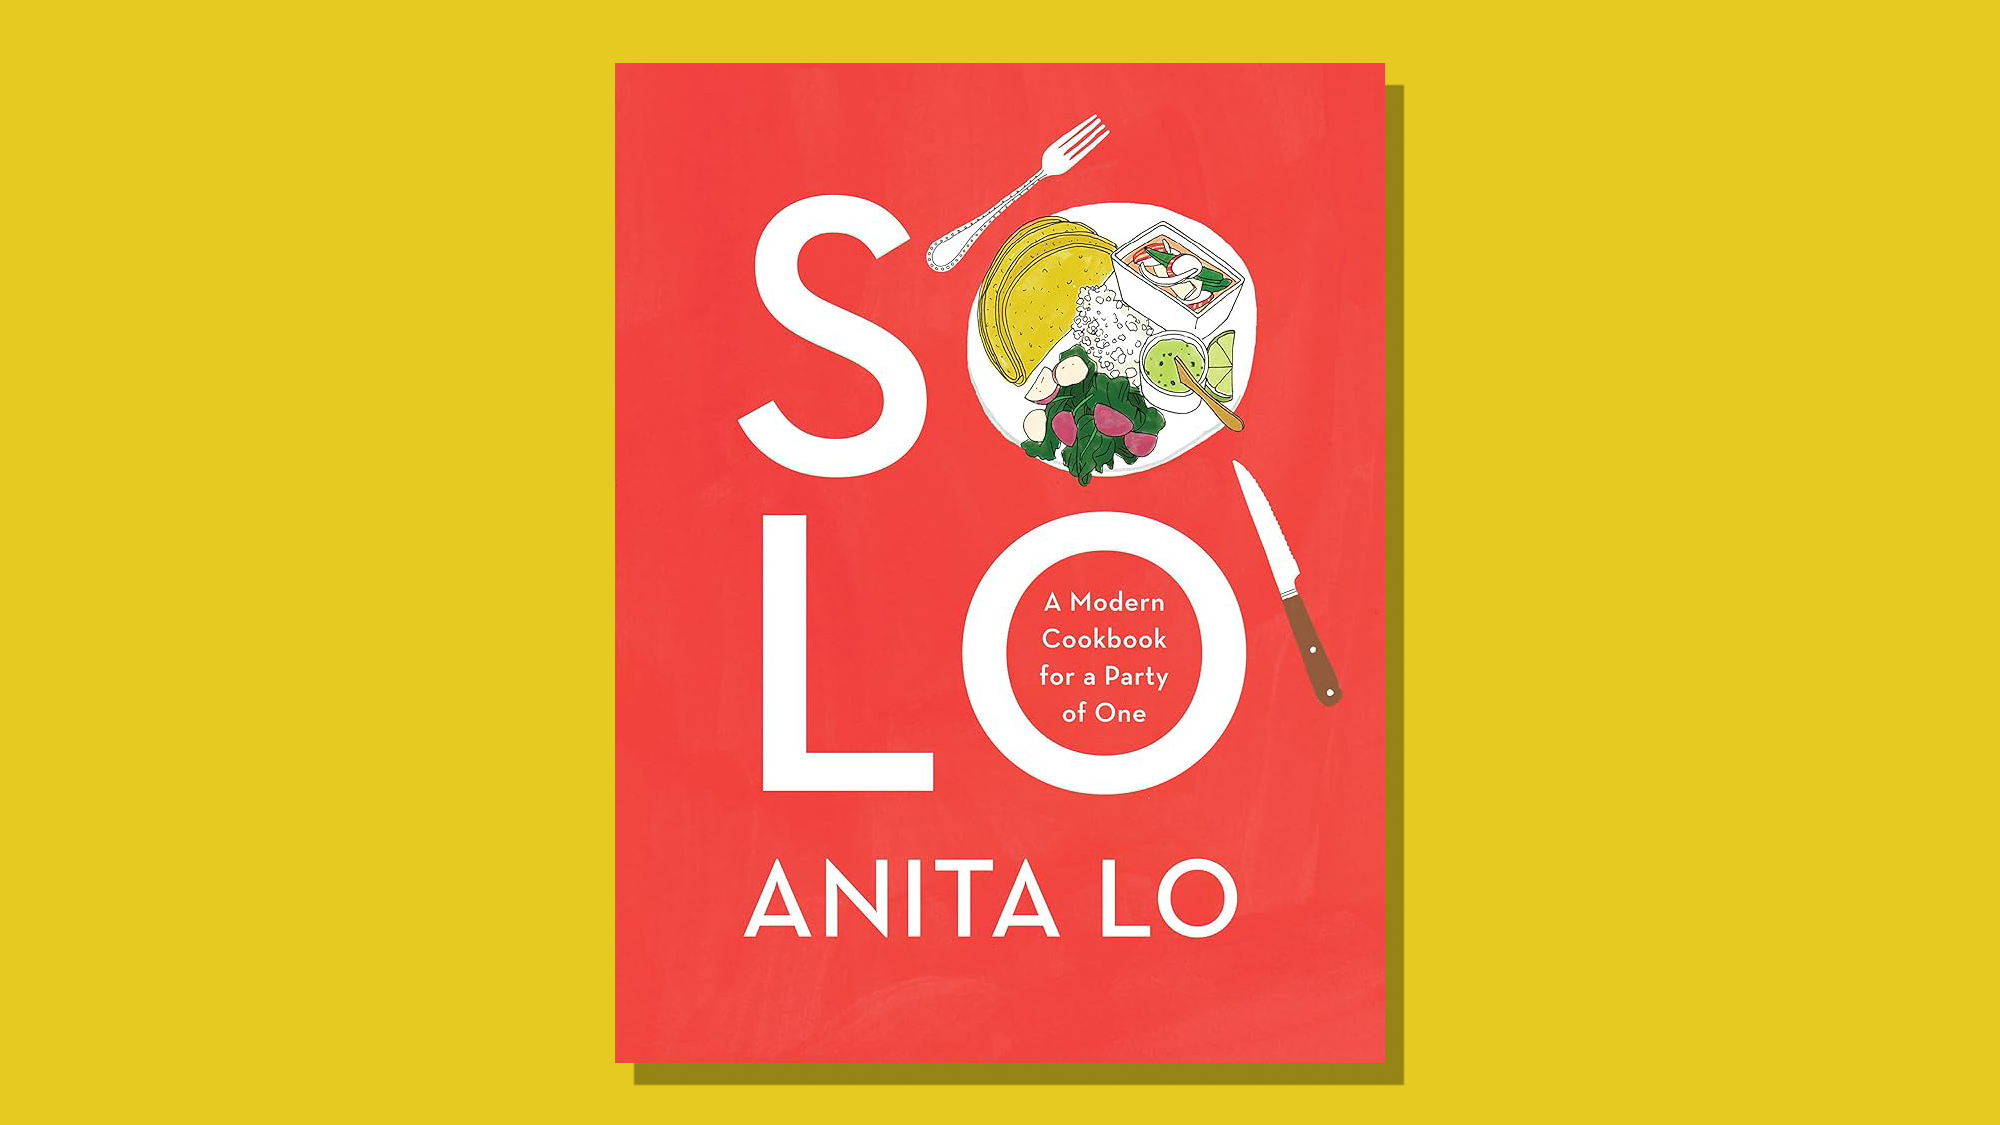  One great cookbook: Anita Lo's 'Solo' 